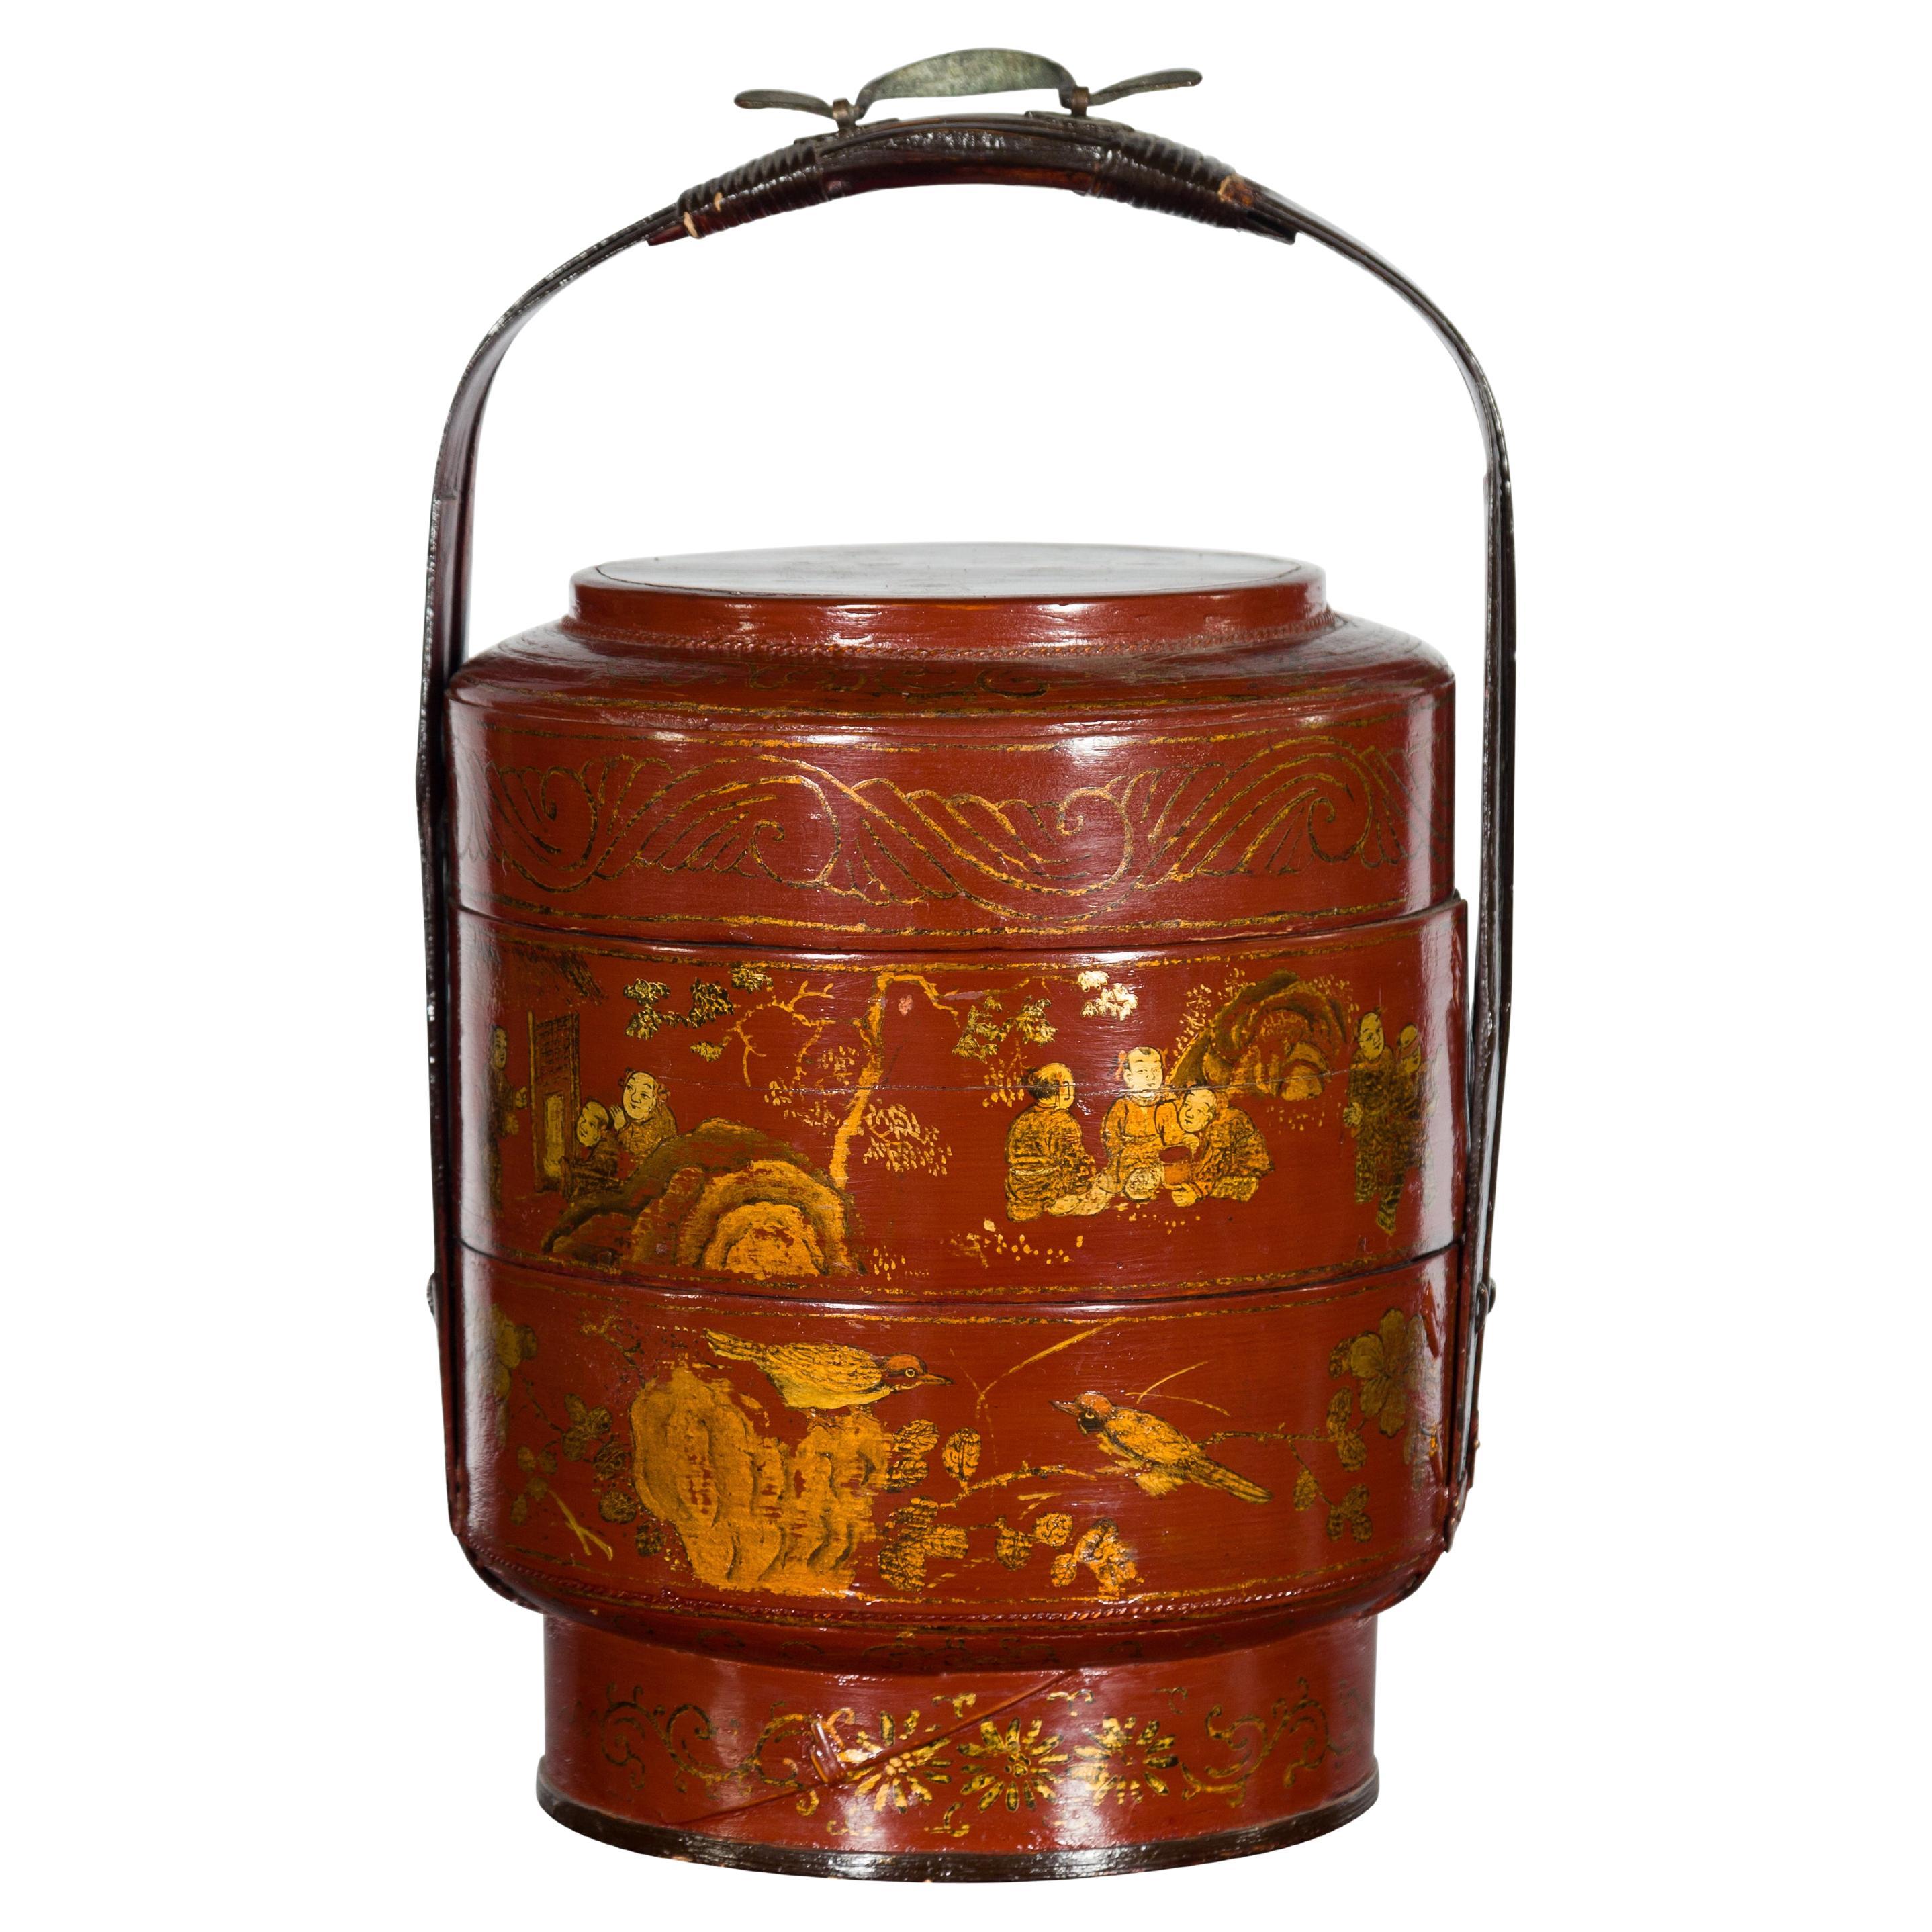 Panier à lunch chinois du début du XXe siècle à trois étages en laque rouge avec décor doré